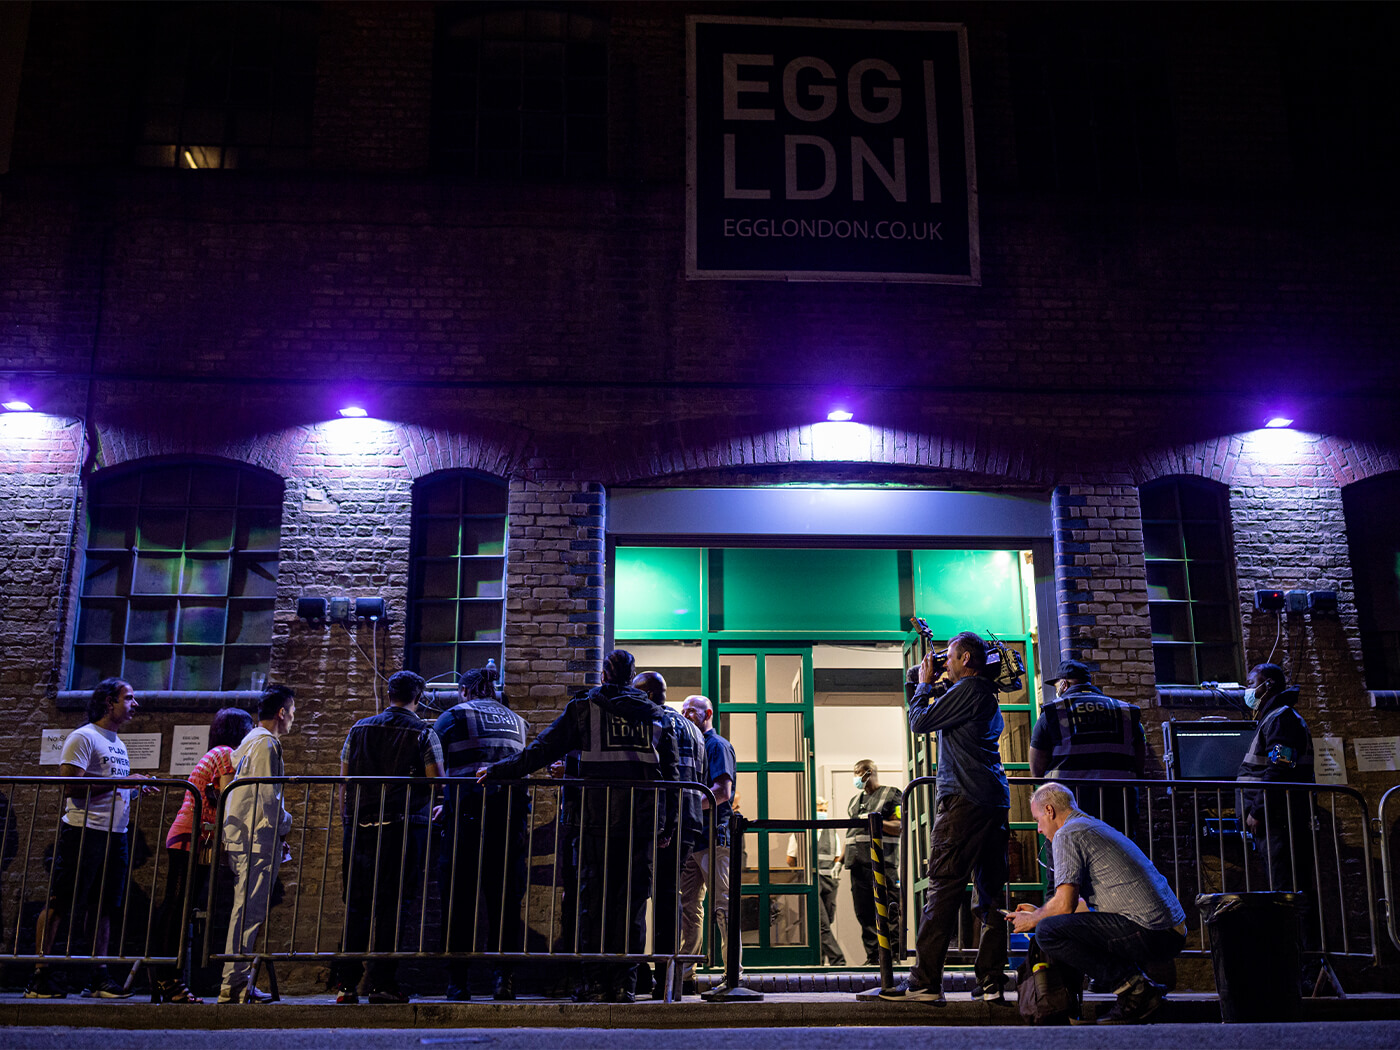 Egg in London